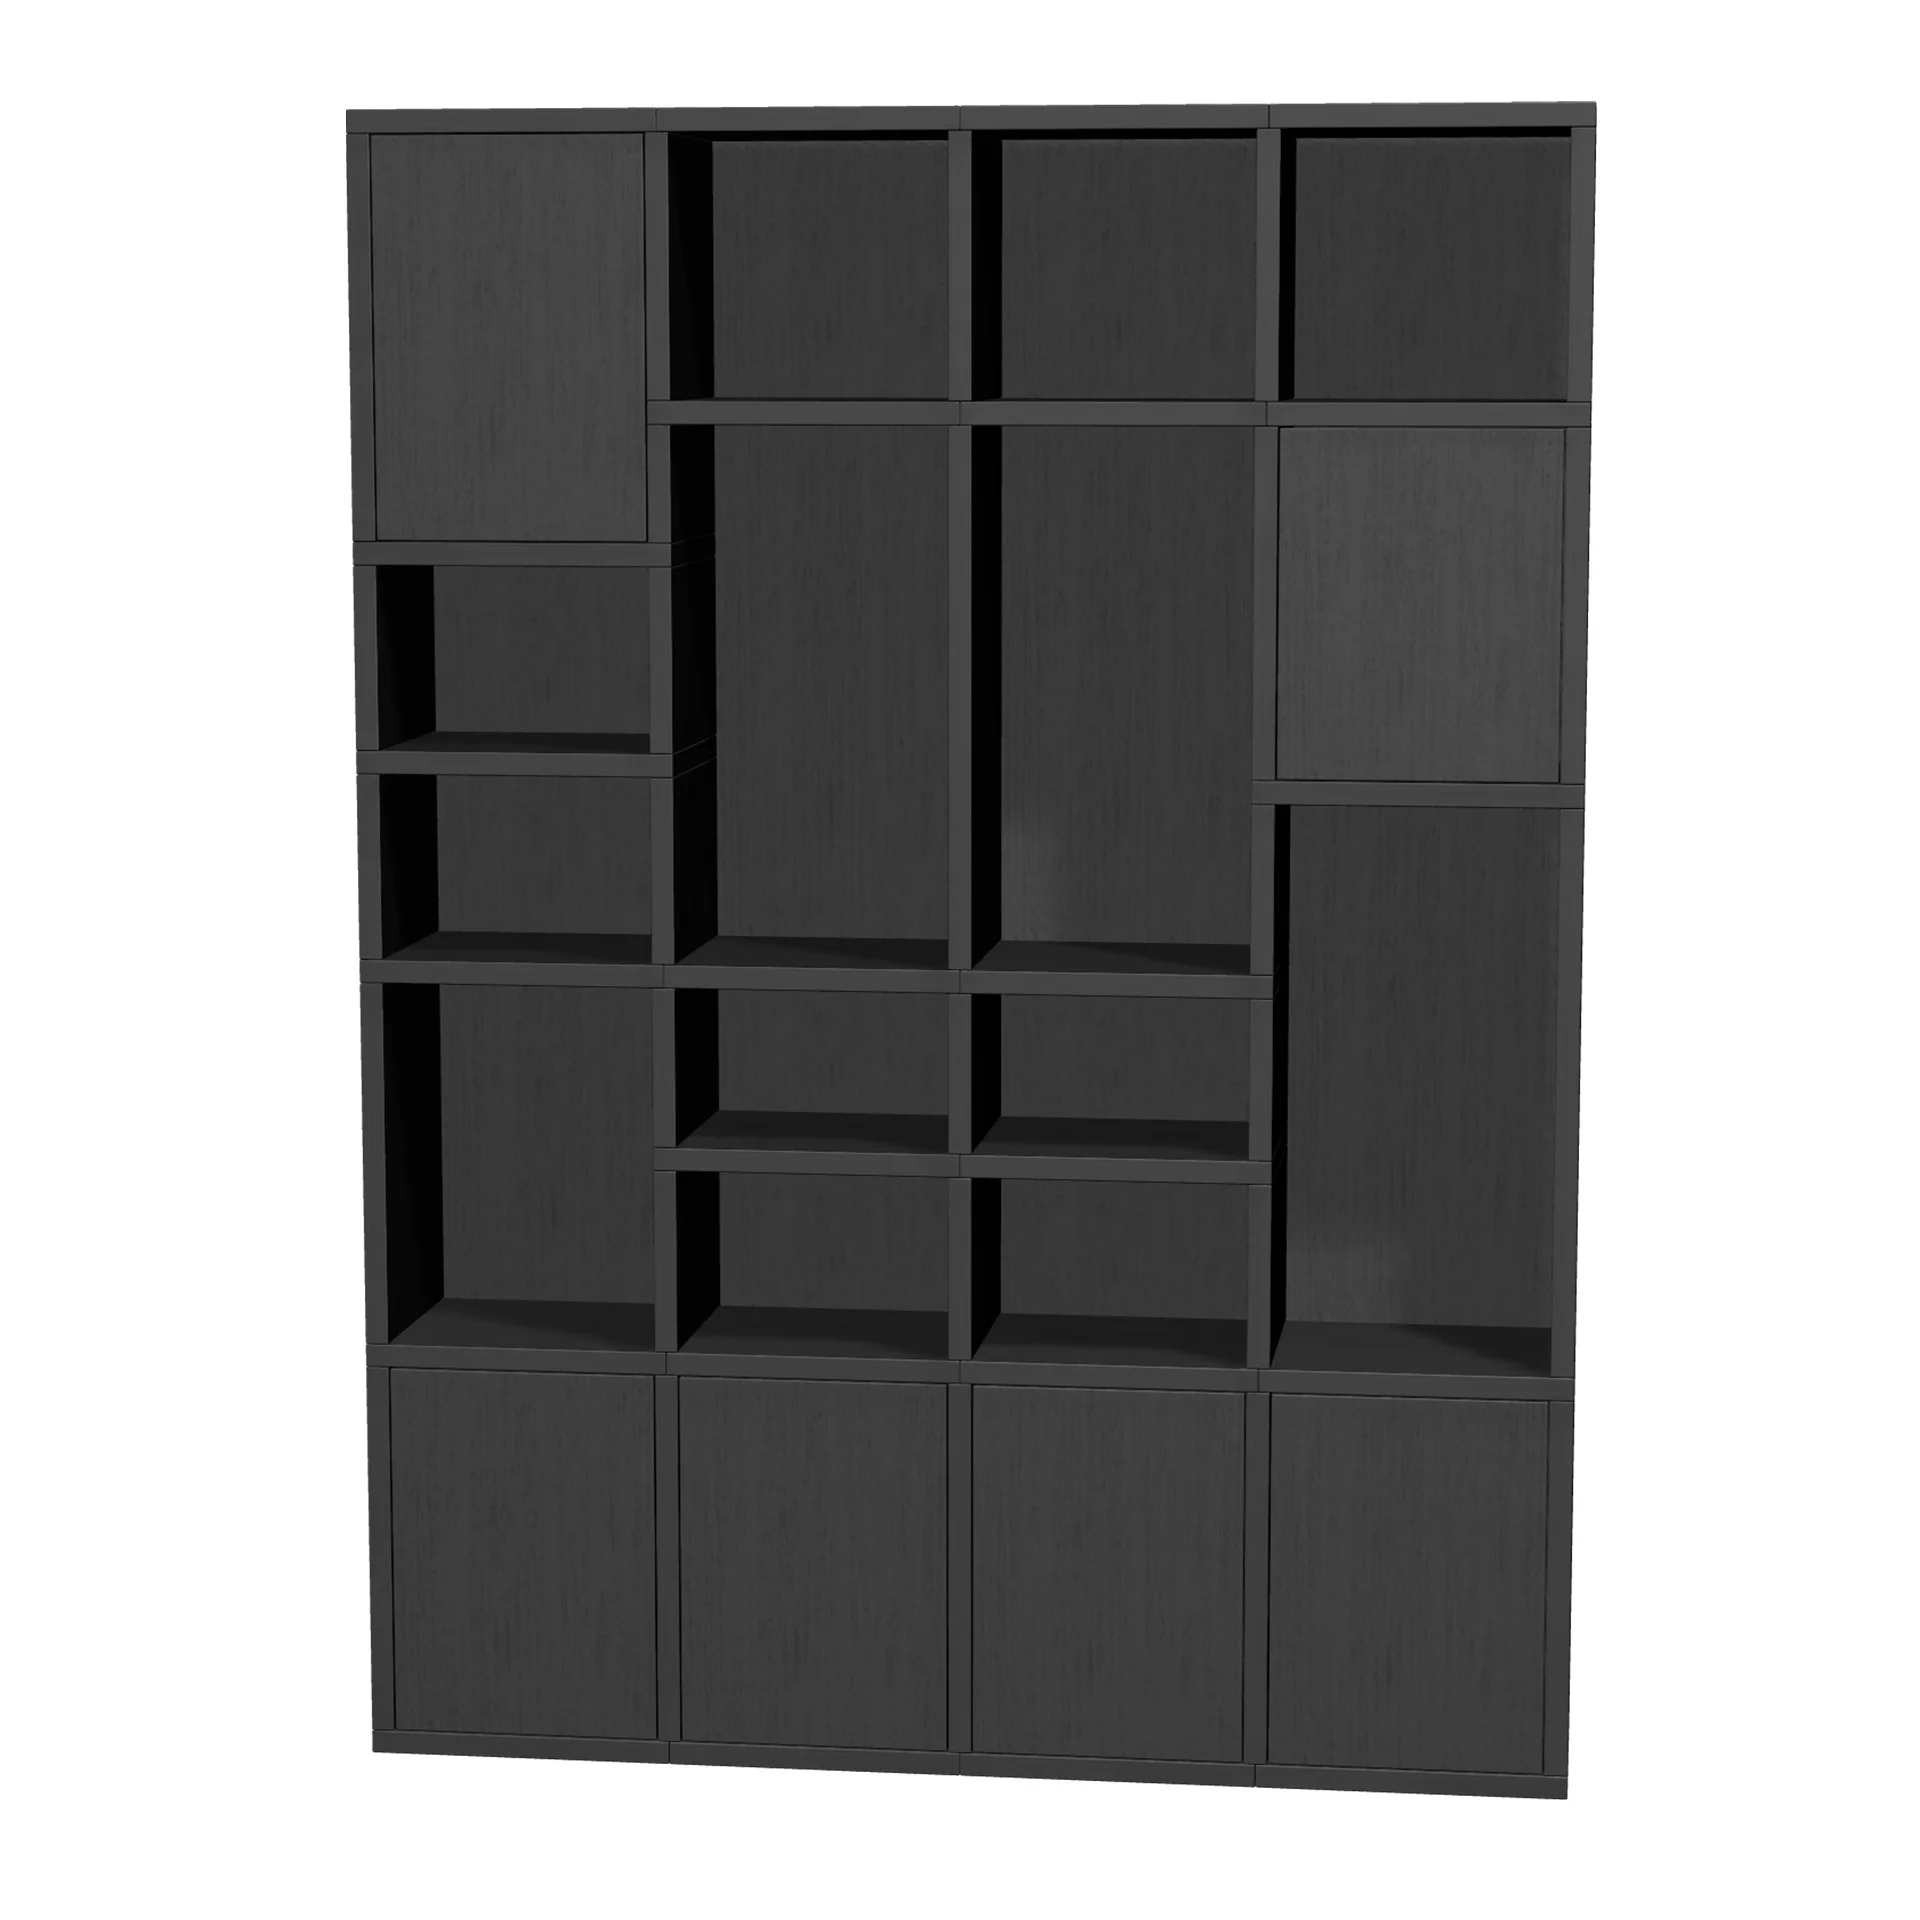 TSFC007 in black oak furniture board